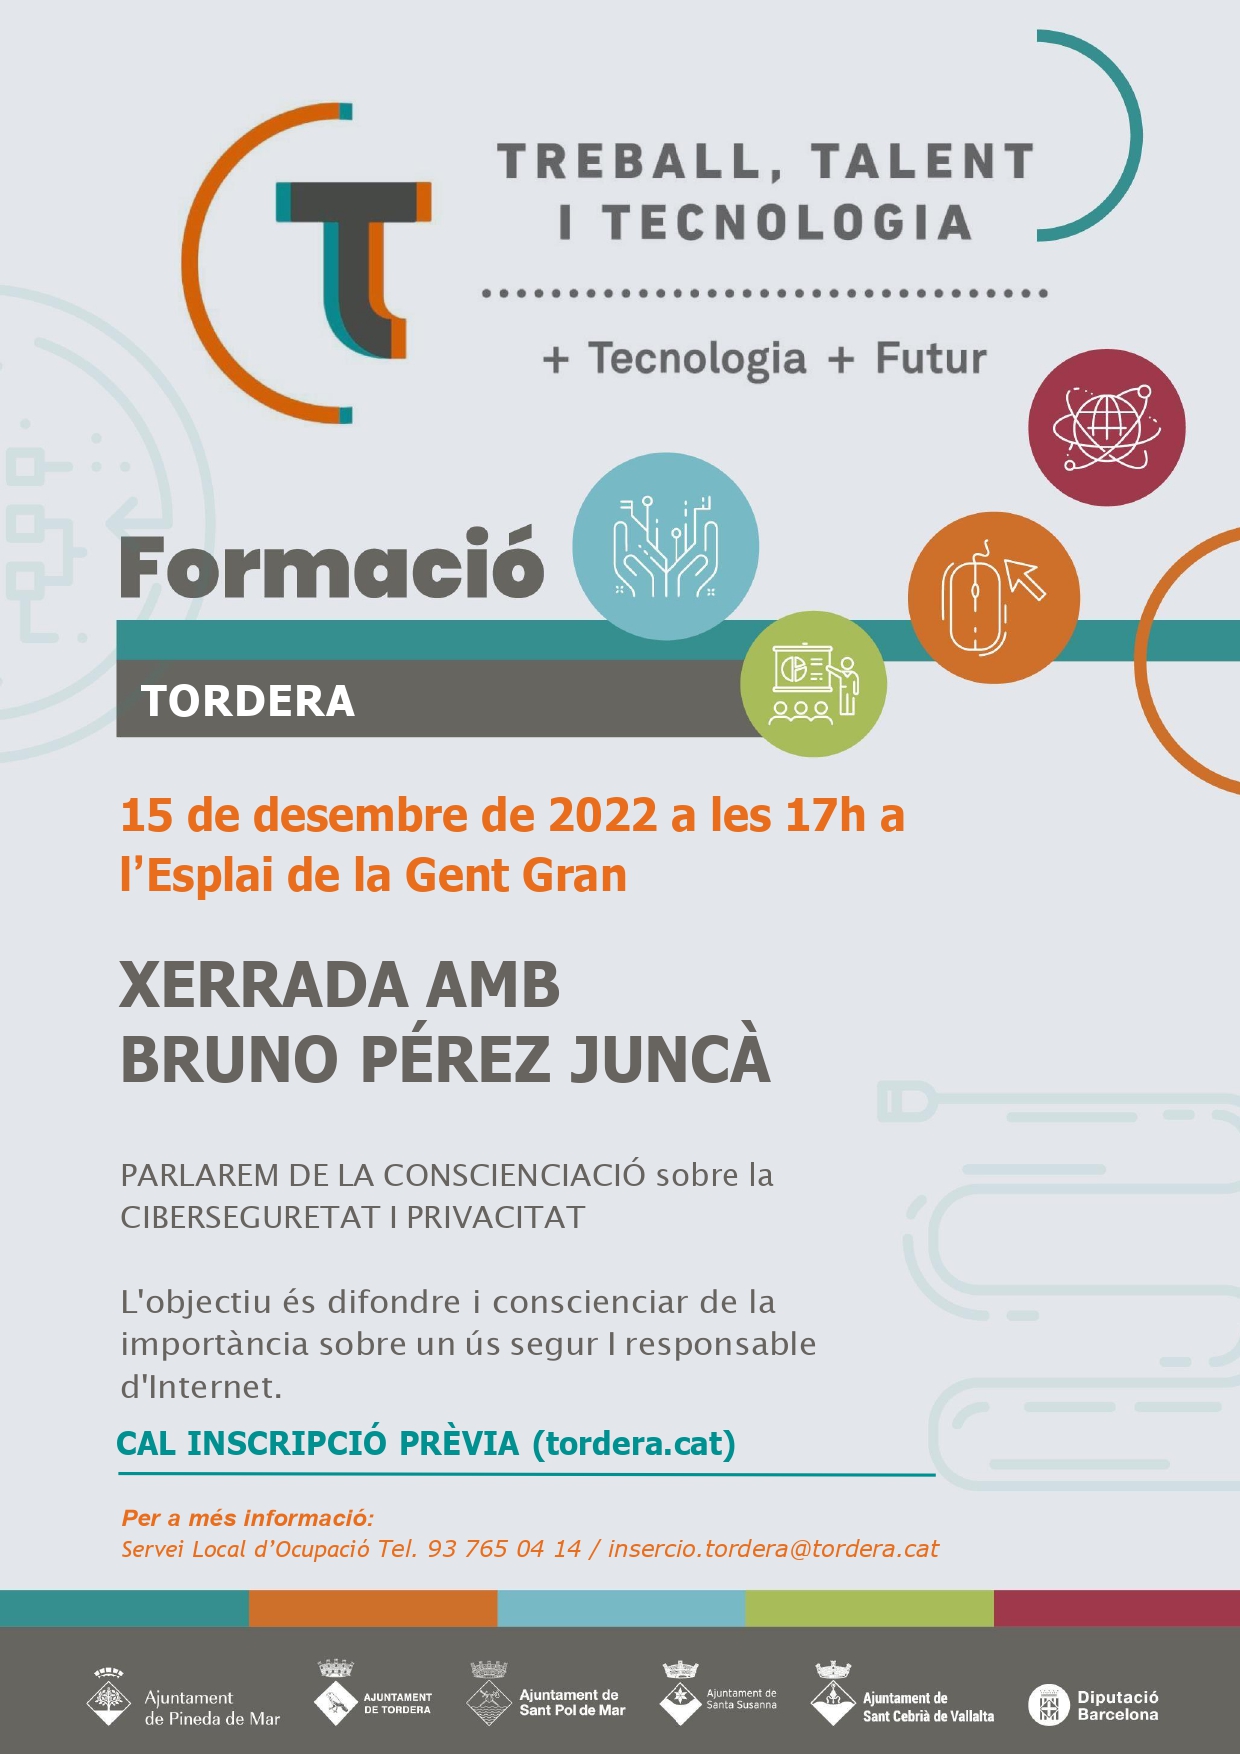 L'expert en ciberseguretat Bruno Perez Juncà realitzarà una conferència a l'Esplai de la Gent Gran (CAL INSCRIPCIÓ PRÈVIA)